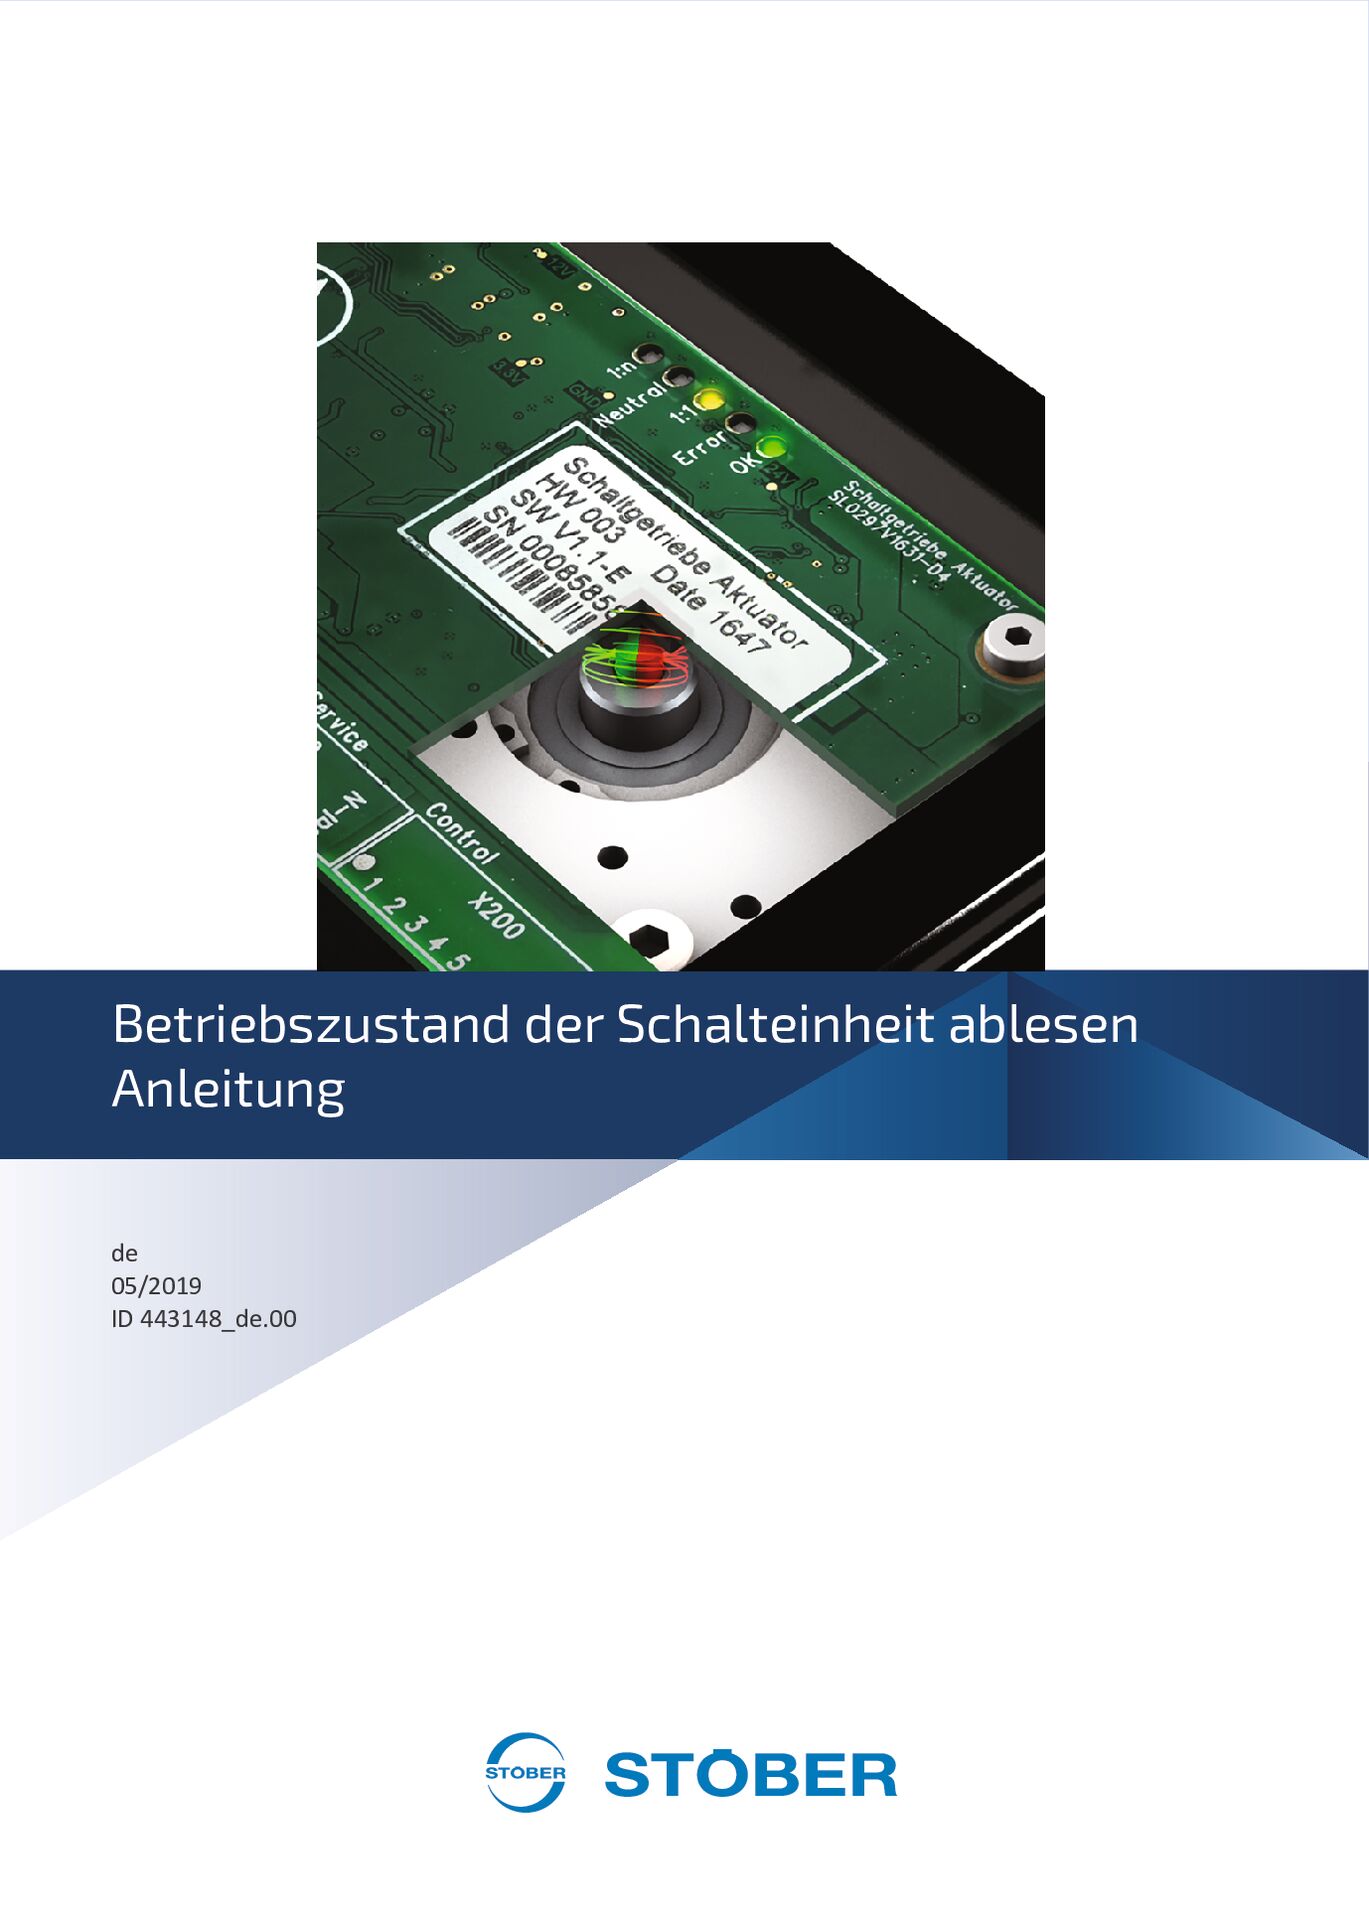 Betriebsanleitung Zweigang-Schaltgetriebe Betriebszustand Schalteinheit_DE